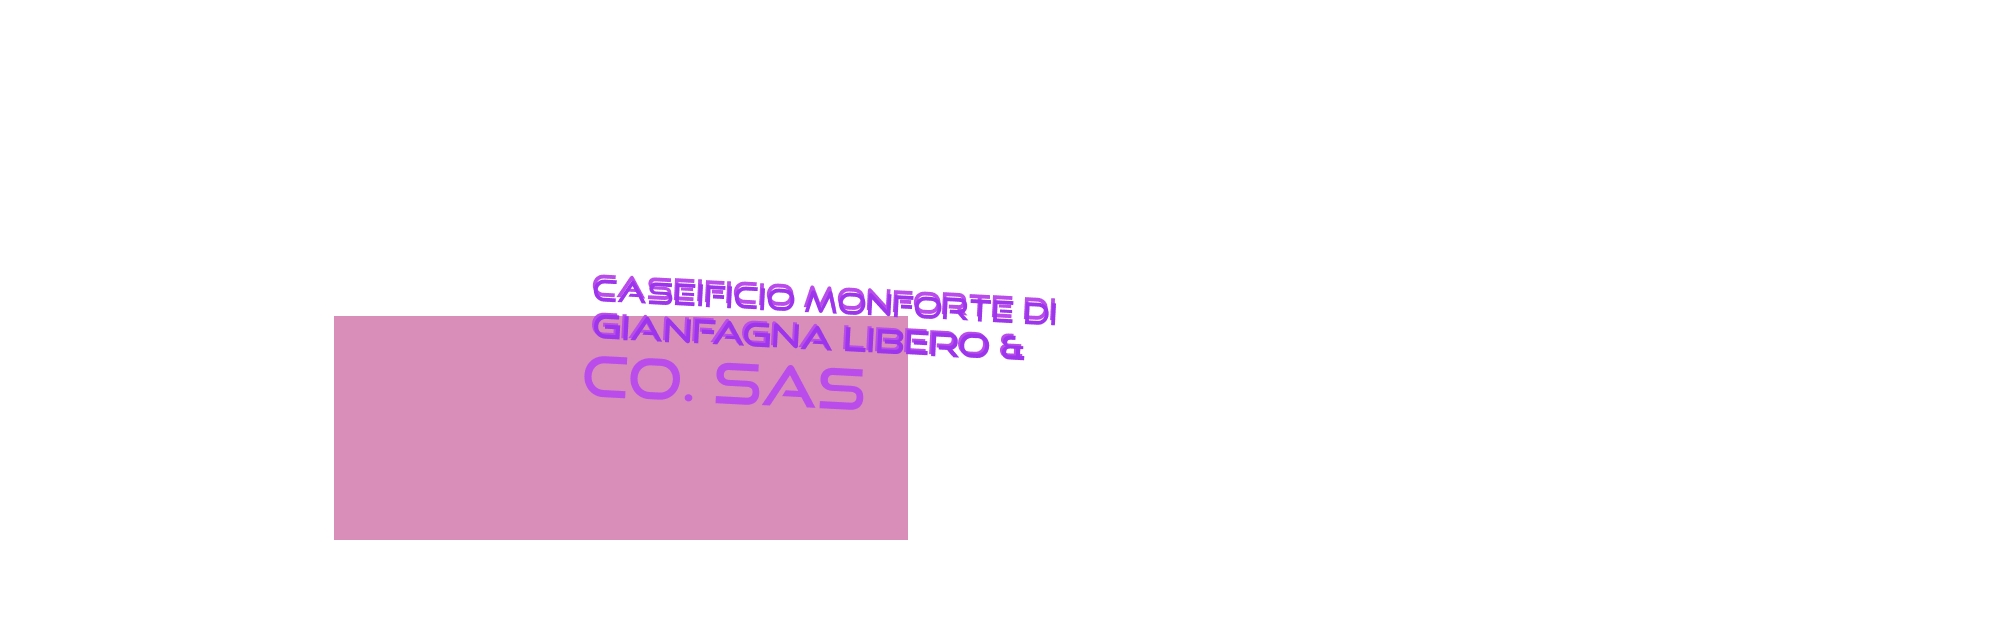 logo Caseificio Monforte di Gianfagna Libero & Co. Sas